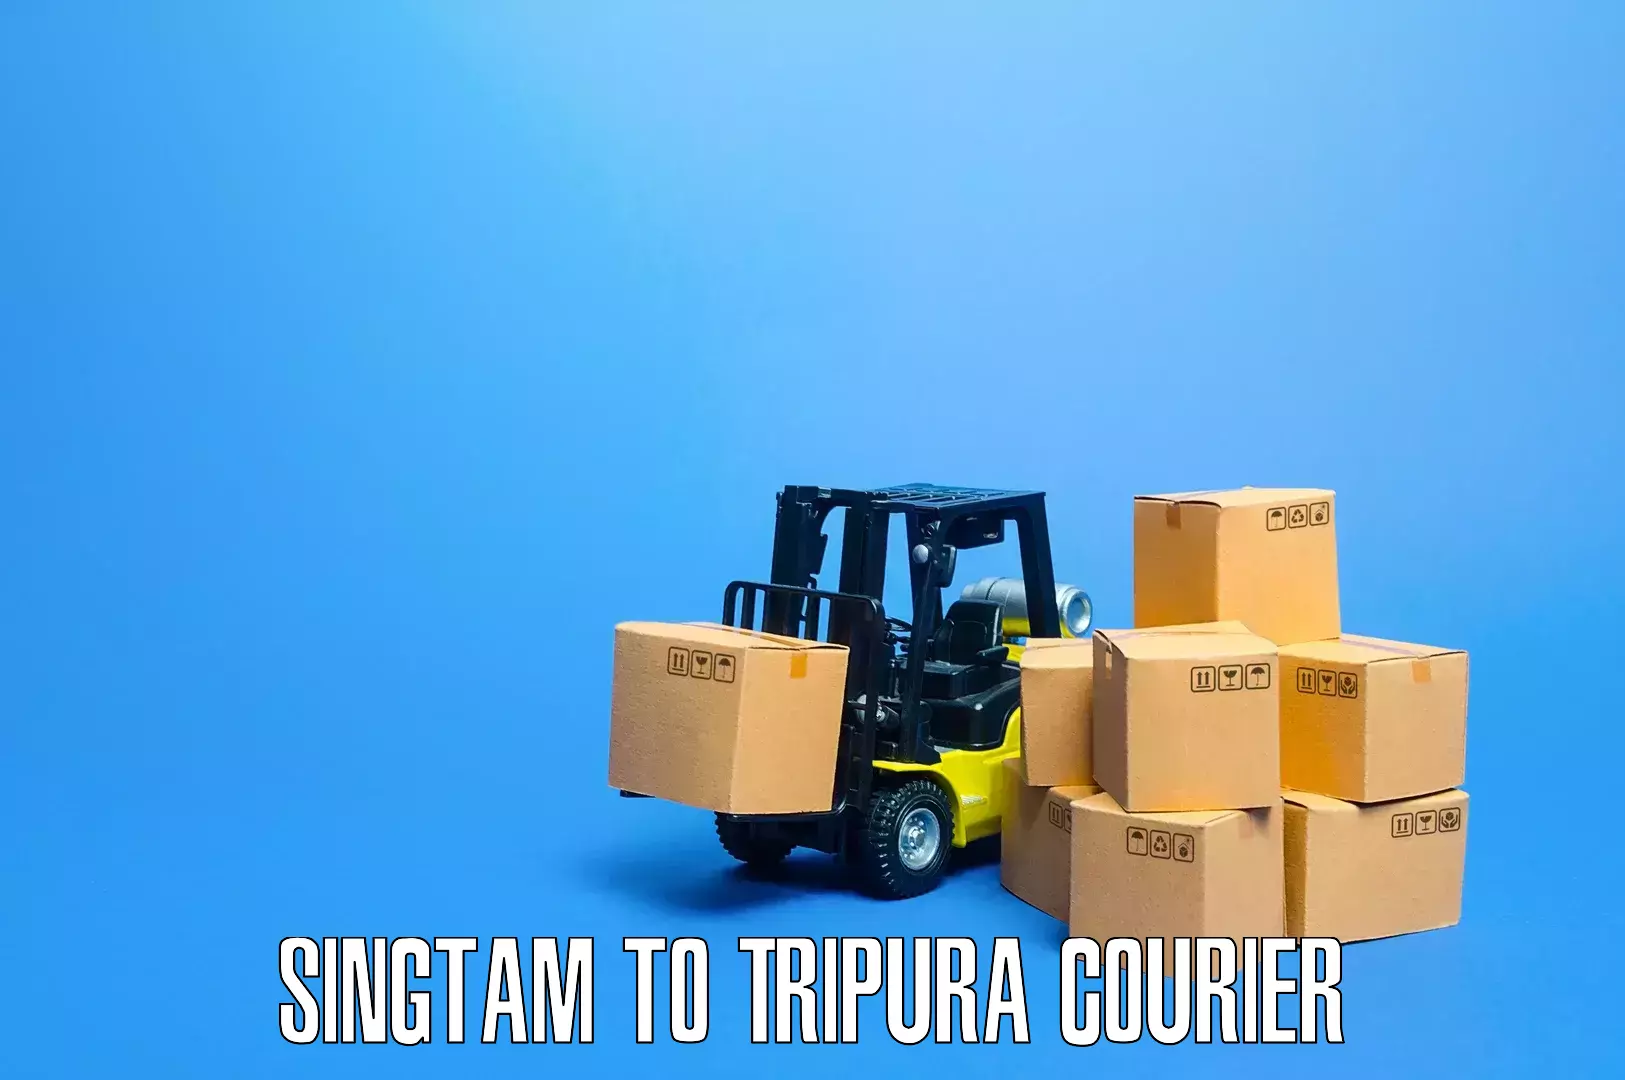 Quality furniture relocation Singtam to Amarpur